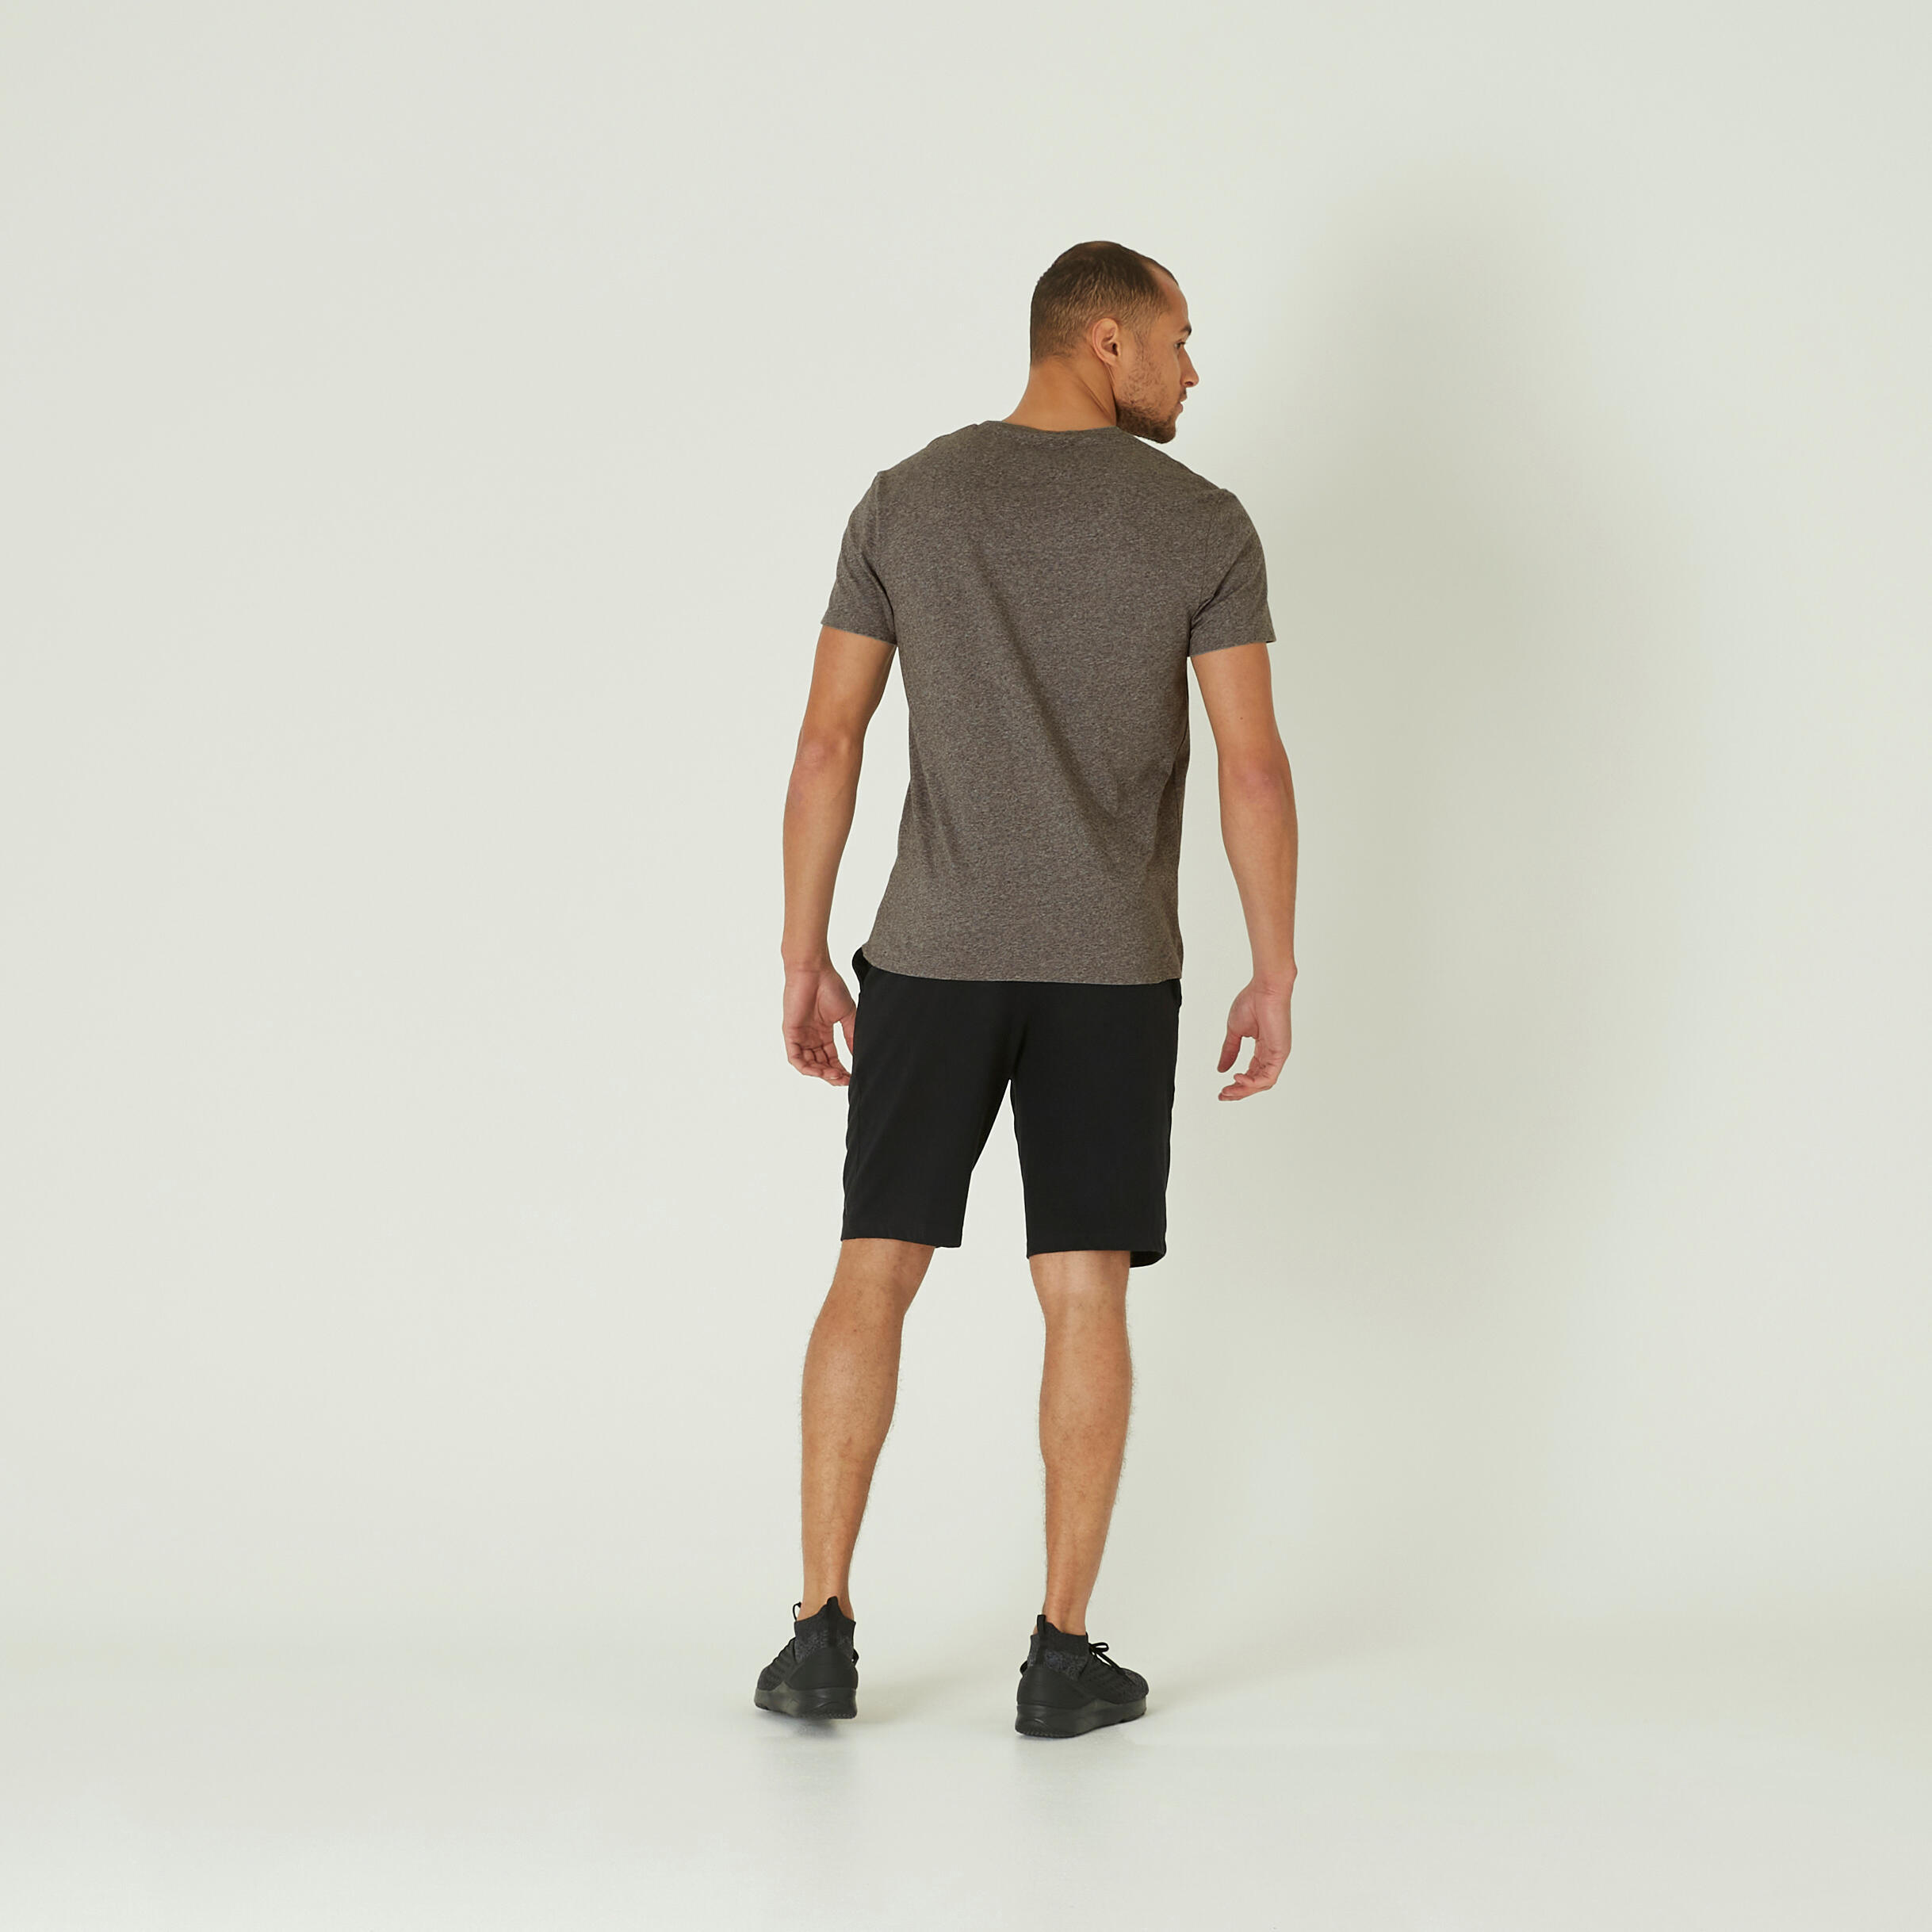 Men's Fitness T-Shirt 100 Sportee - Grey 3/4